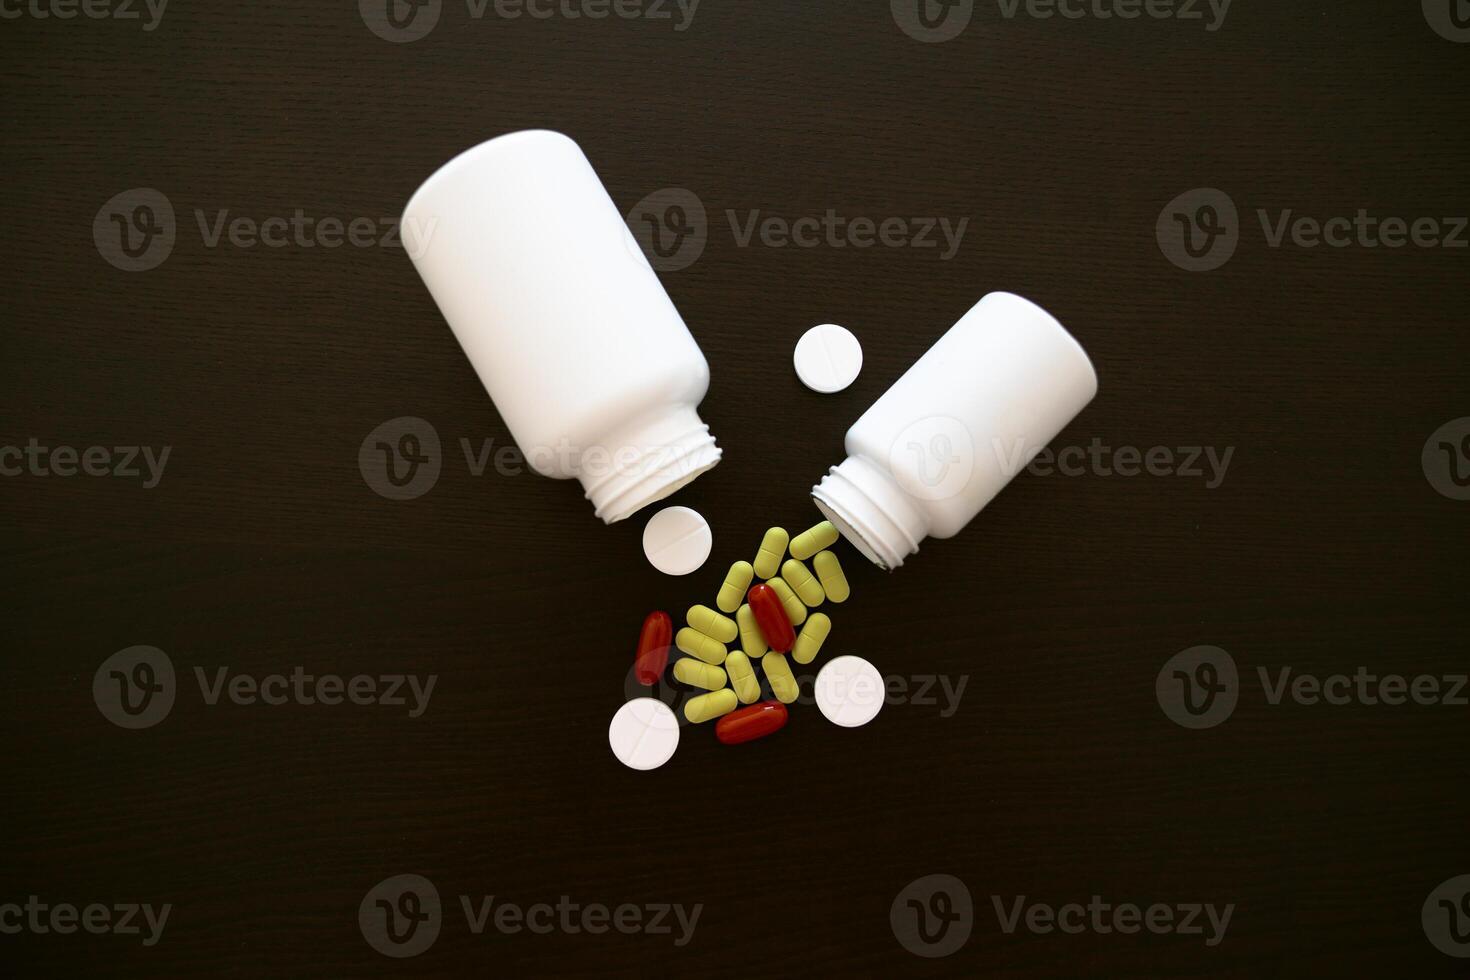 spridd piller från en burk. aspirin tabletter. grön, röd och vit tabletter. foto